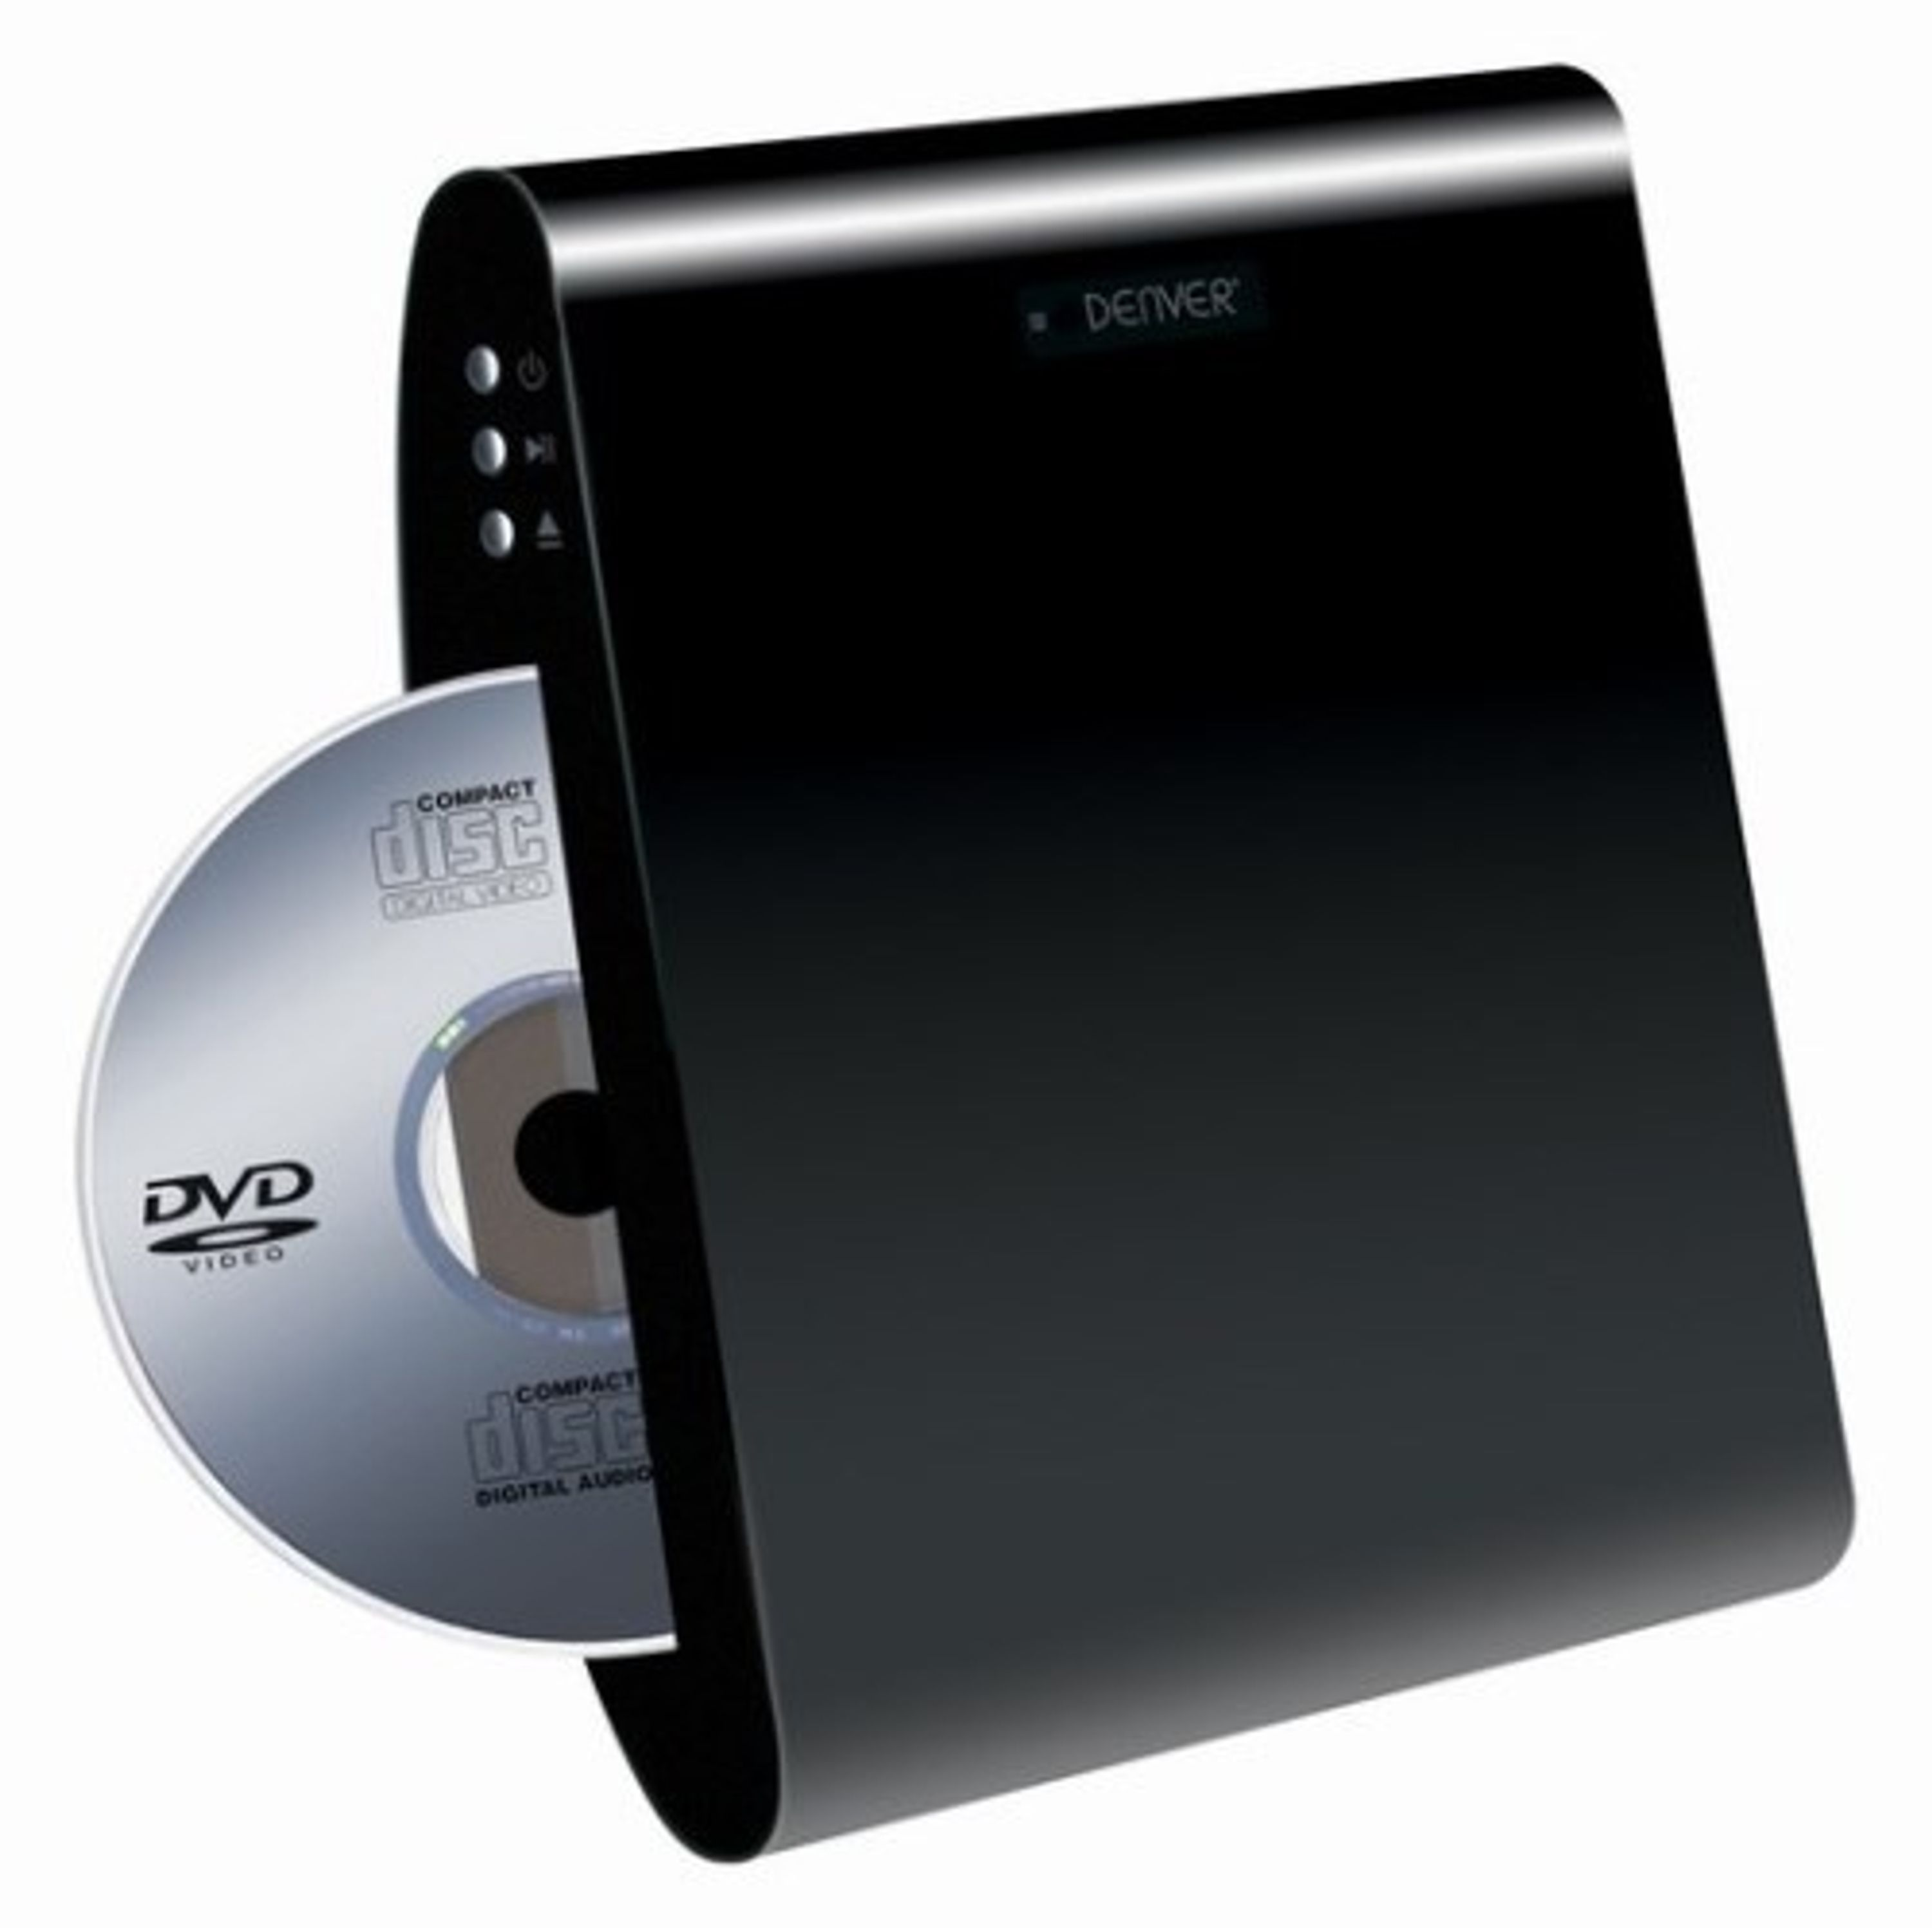 DENVER DWM-100 DVD Player schwarz